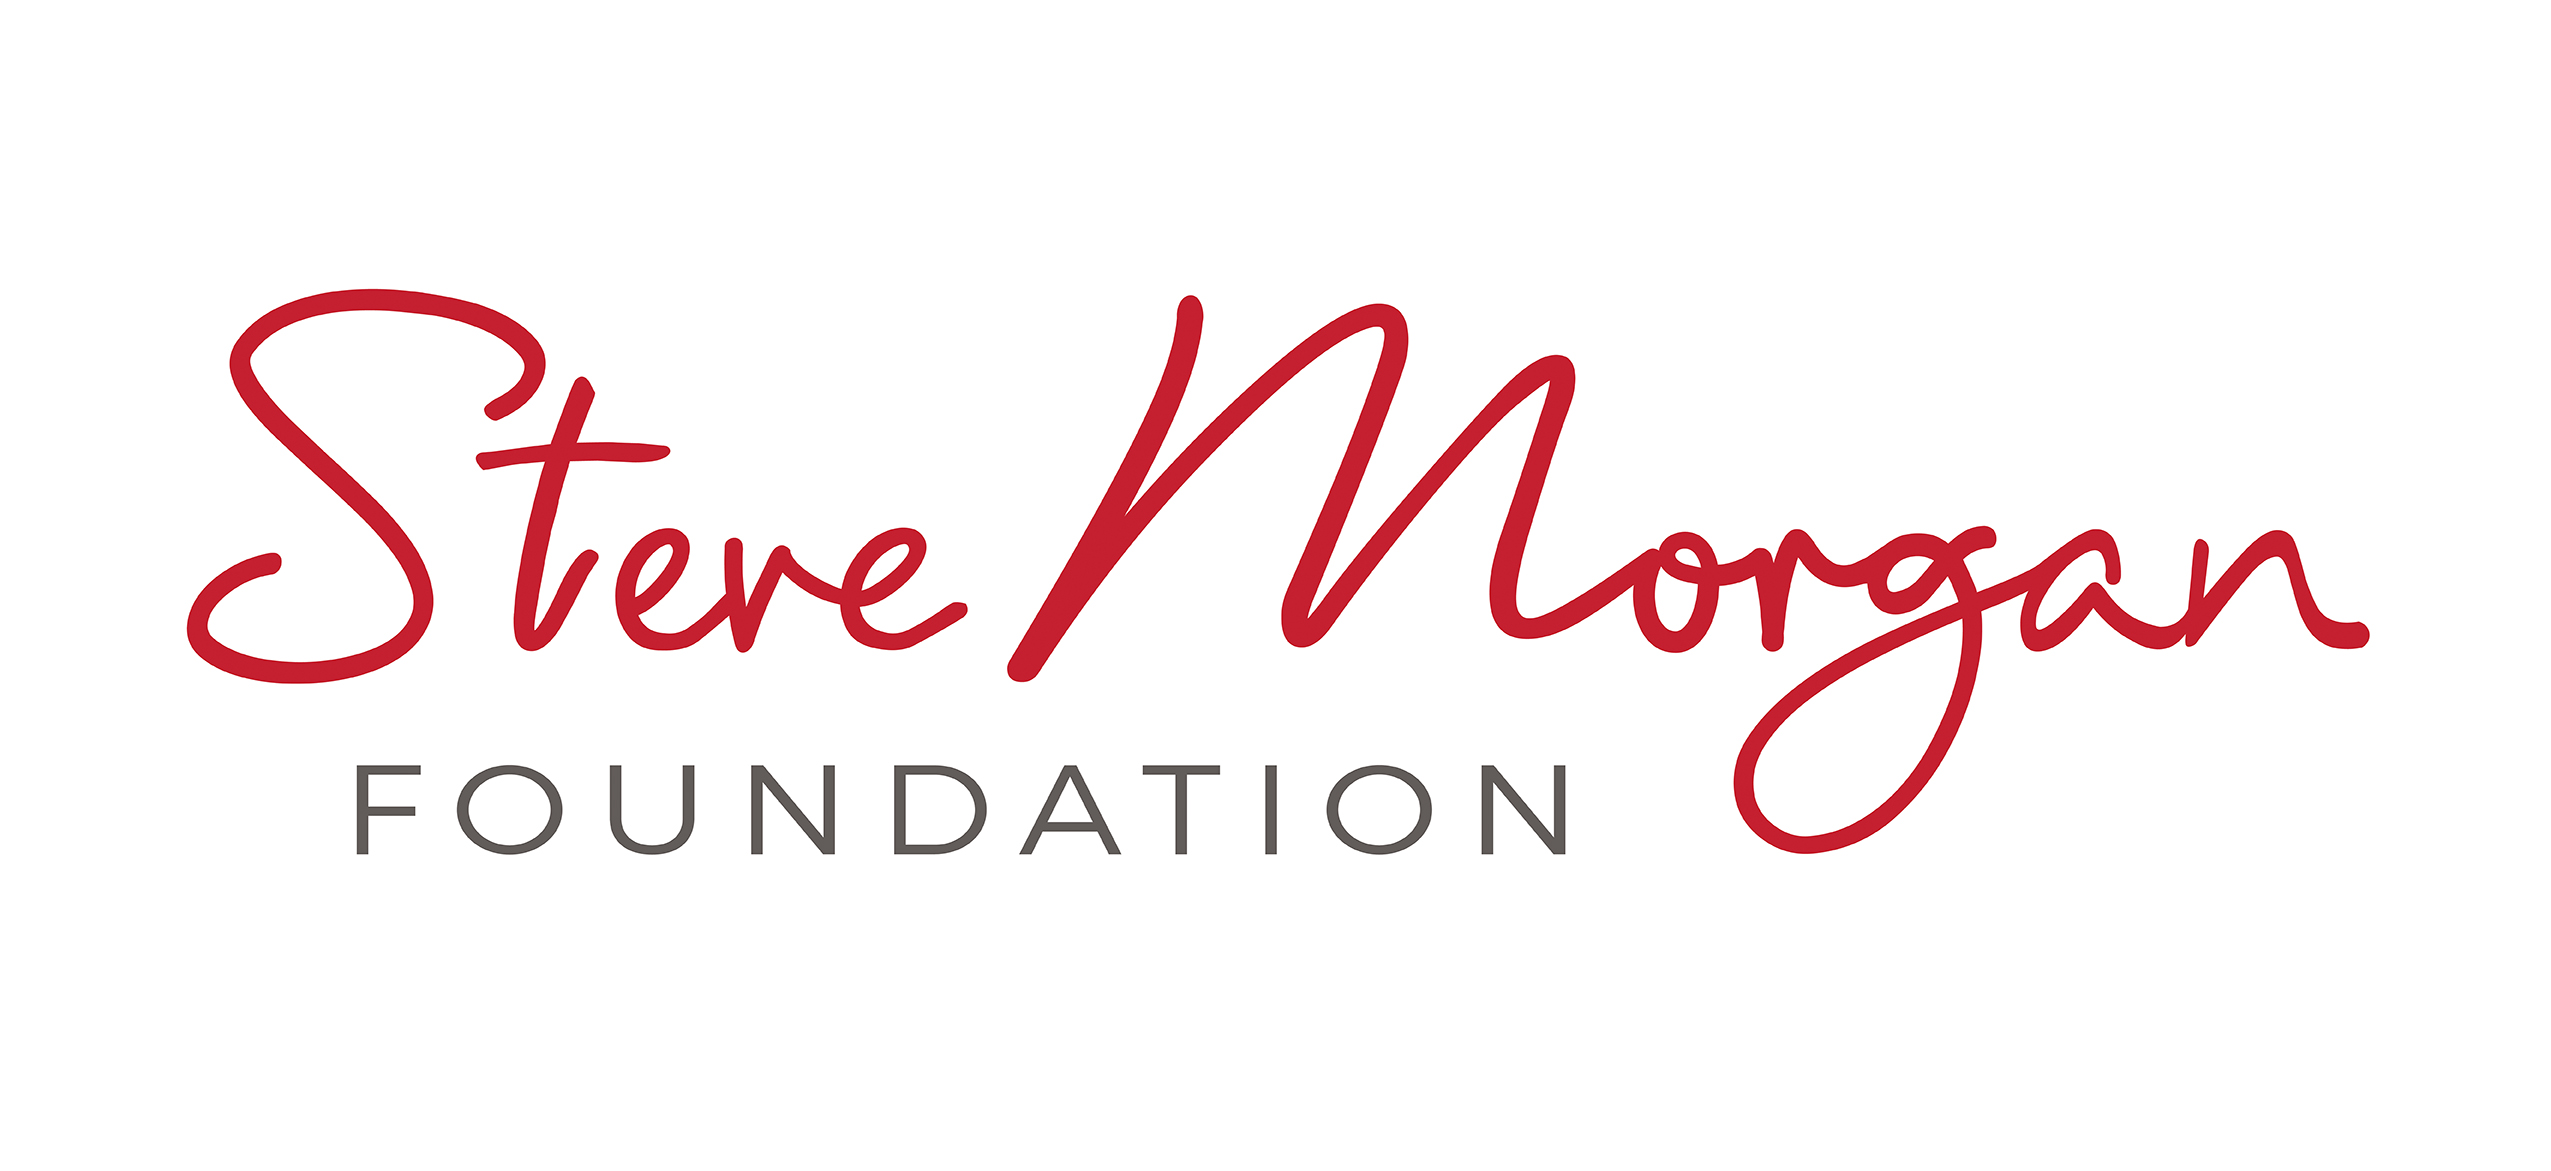 Steve Morgan foundation logo